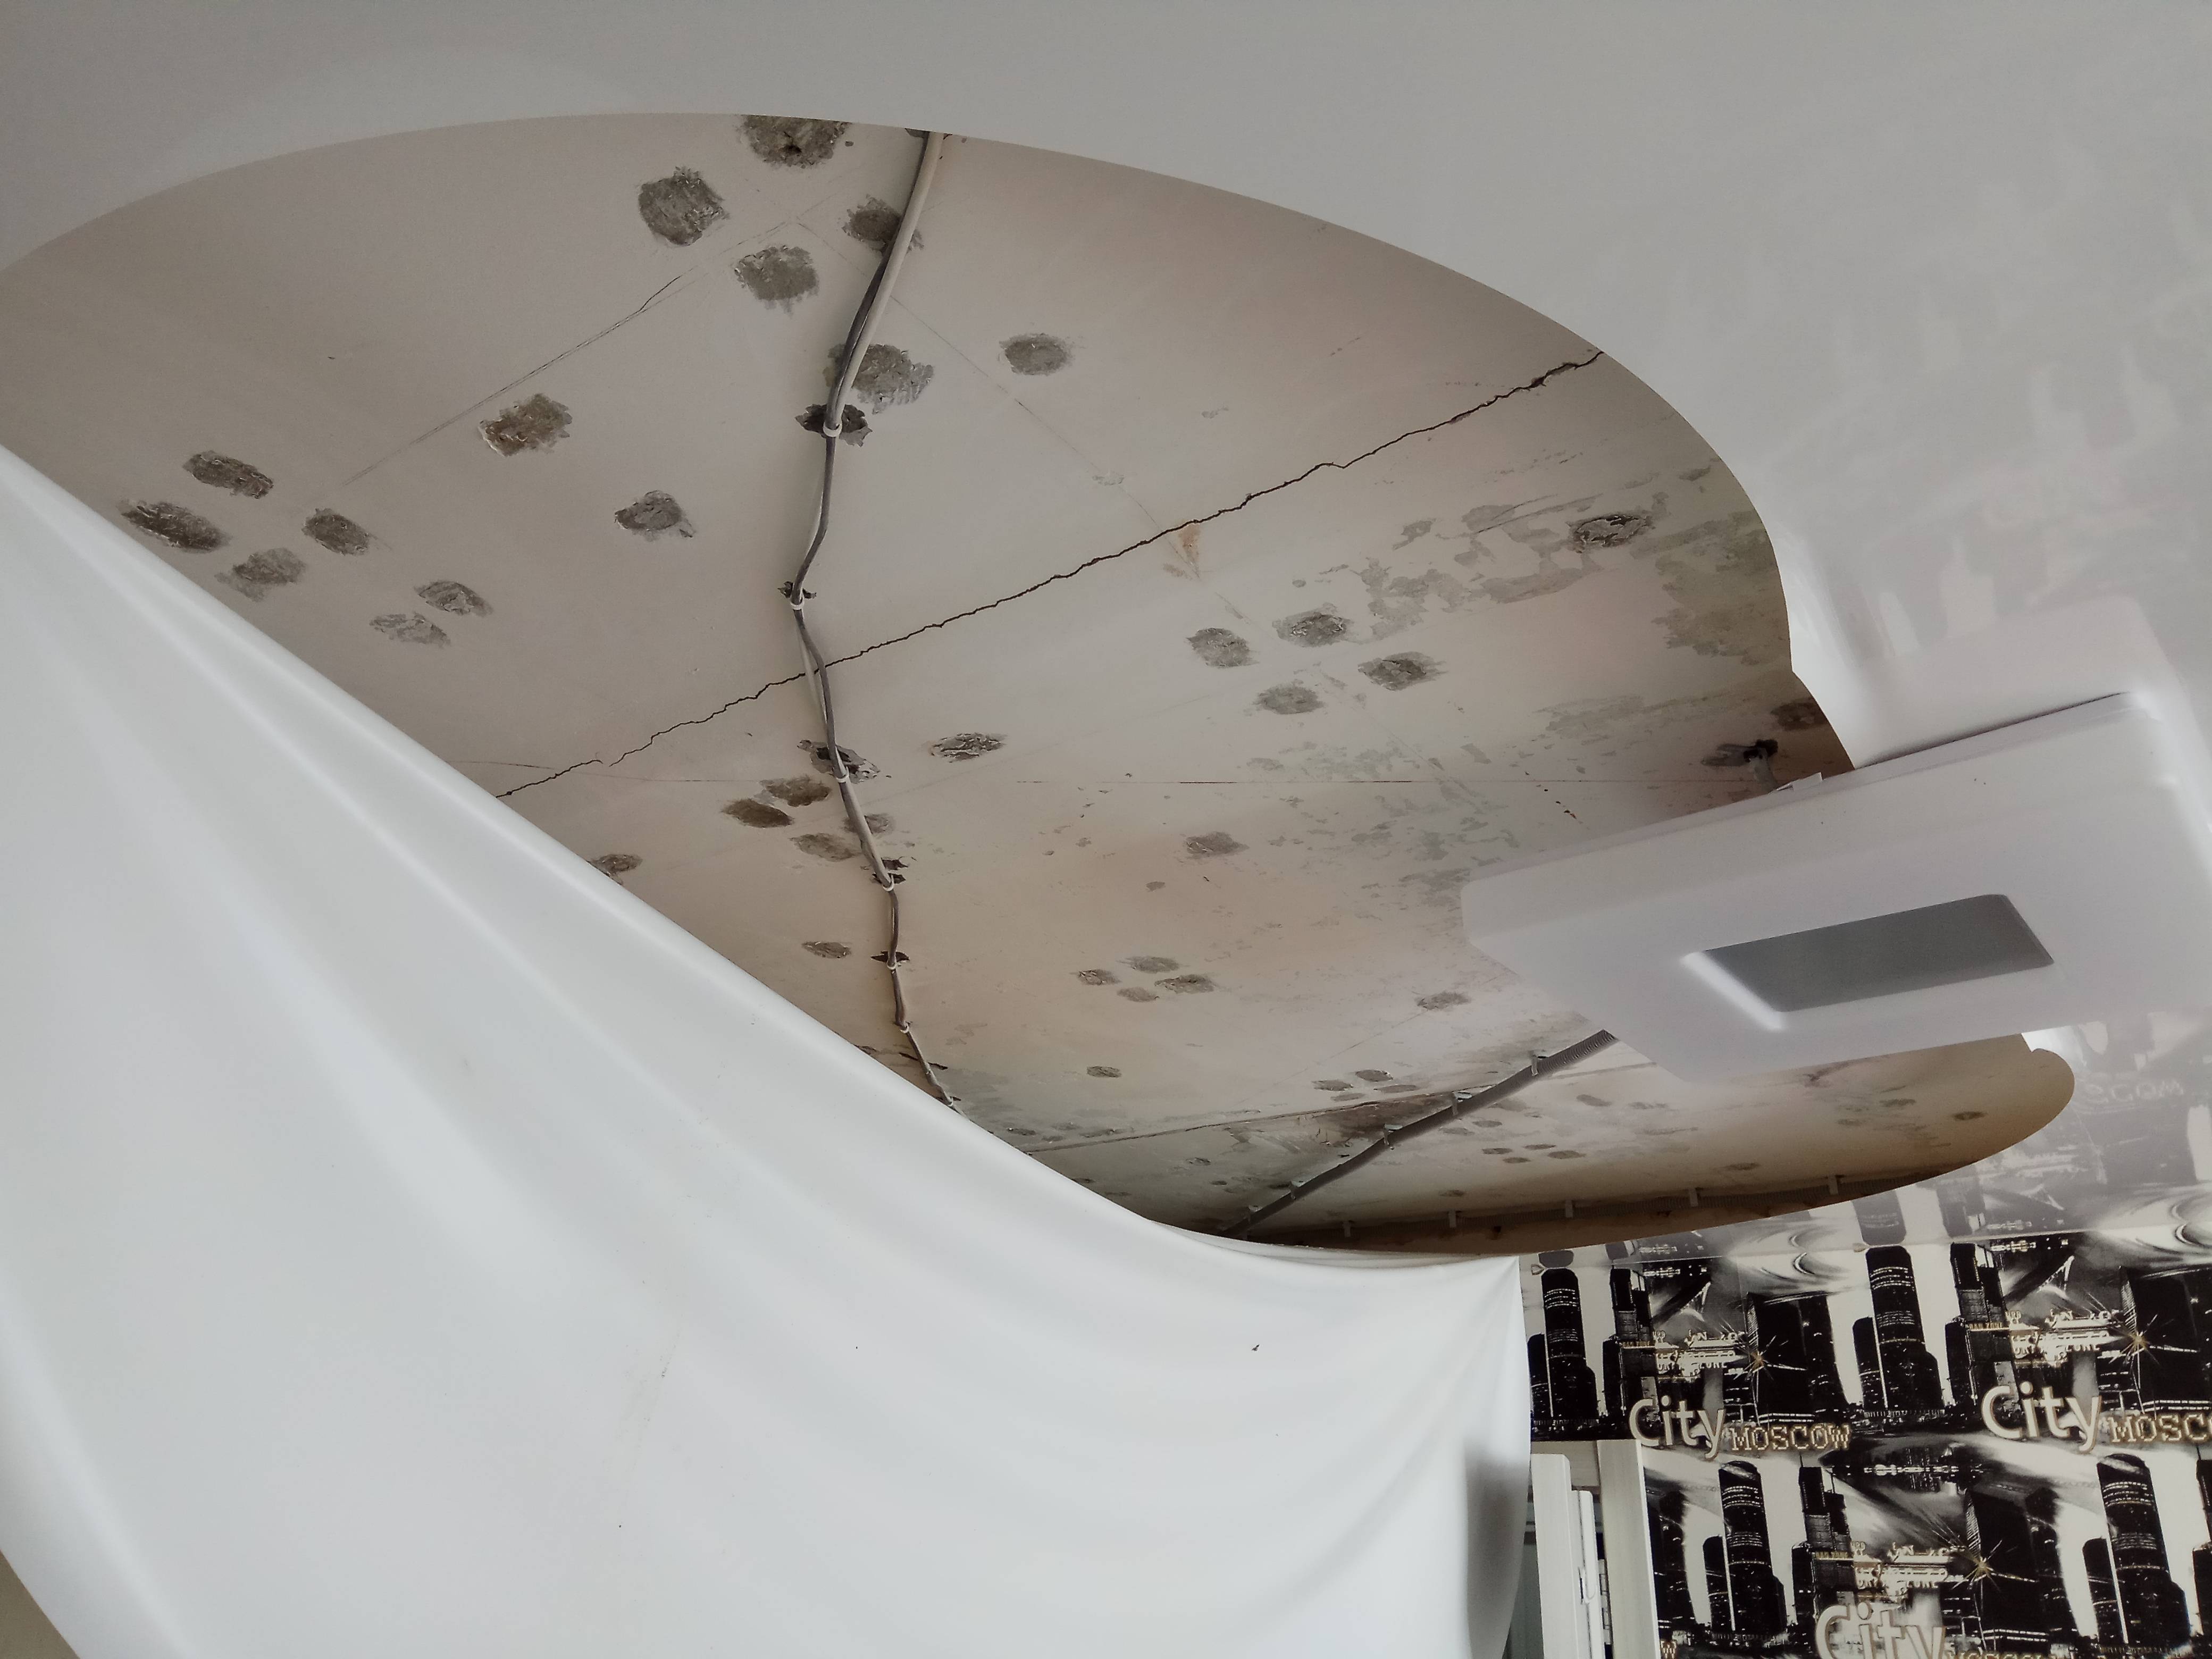 Провис натяжной потолок: ремонт в квартире глянцевого, монтаж и замена с перетяжкой